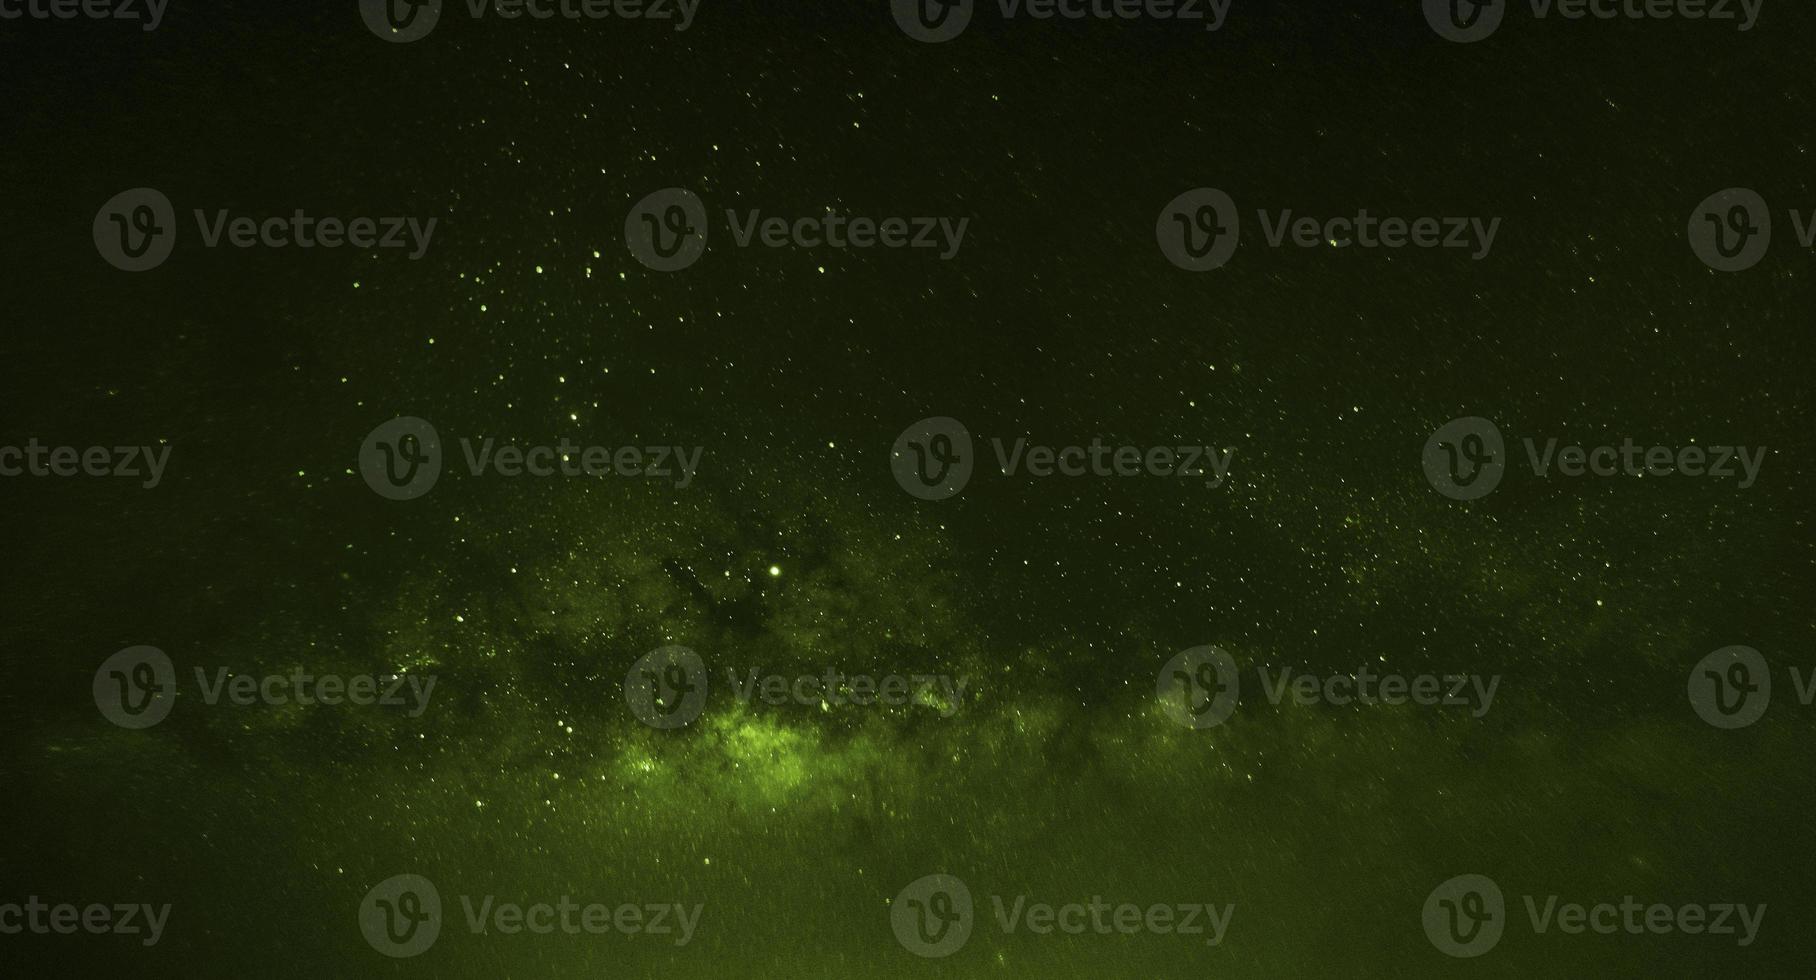 panorama notturno della galassia verde drammatico dallo spazio dell'universo lunare sul cielo notturno foto